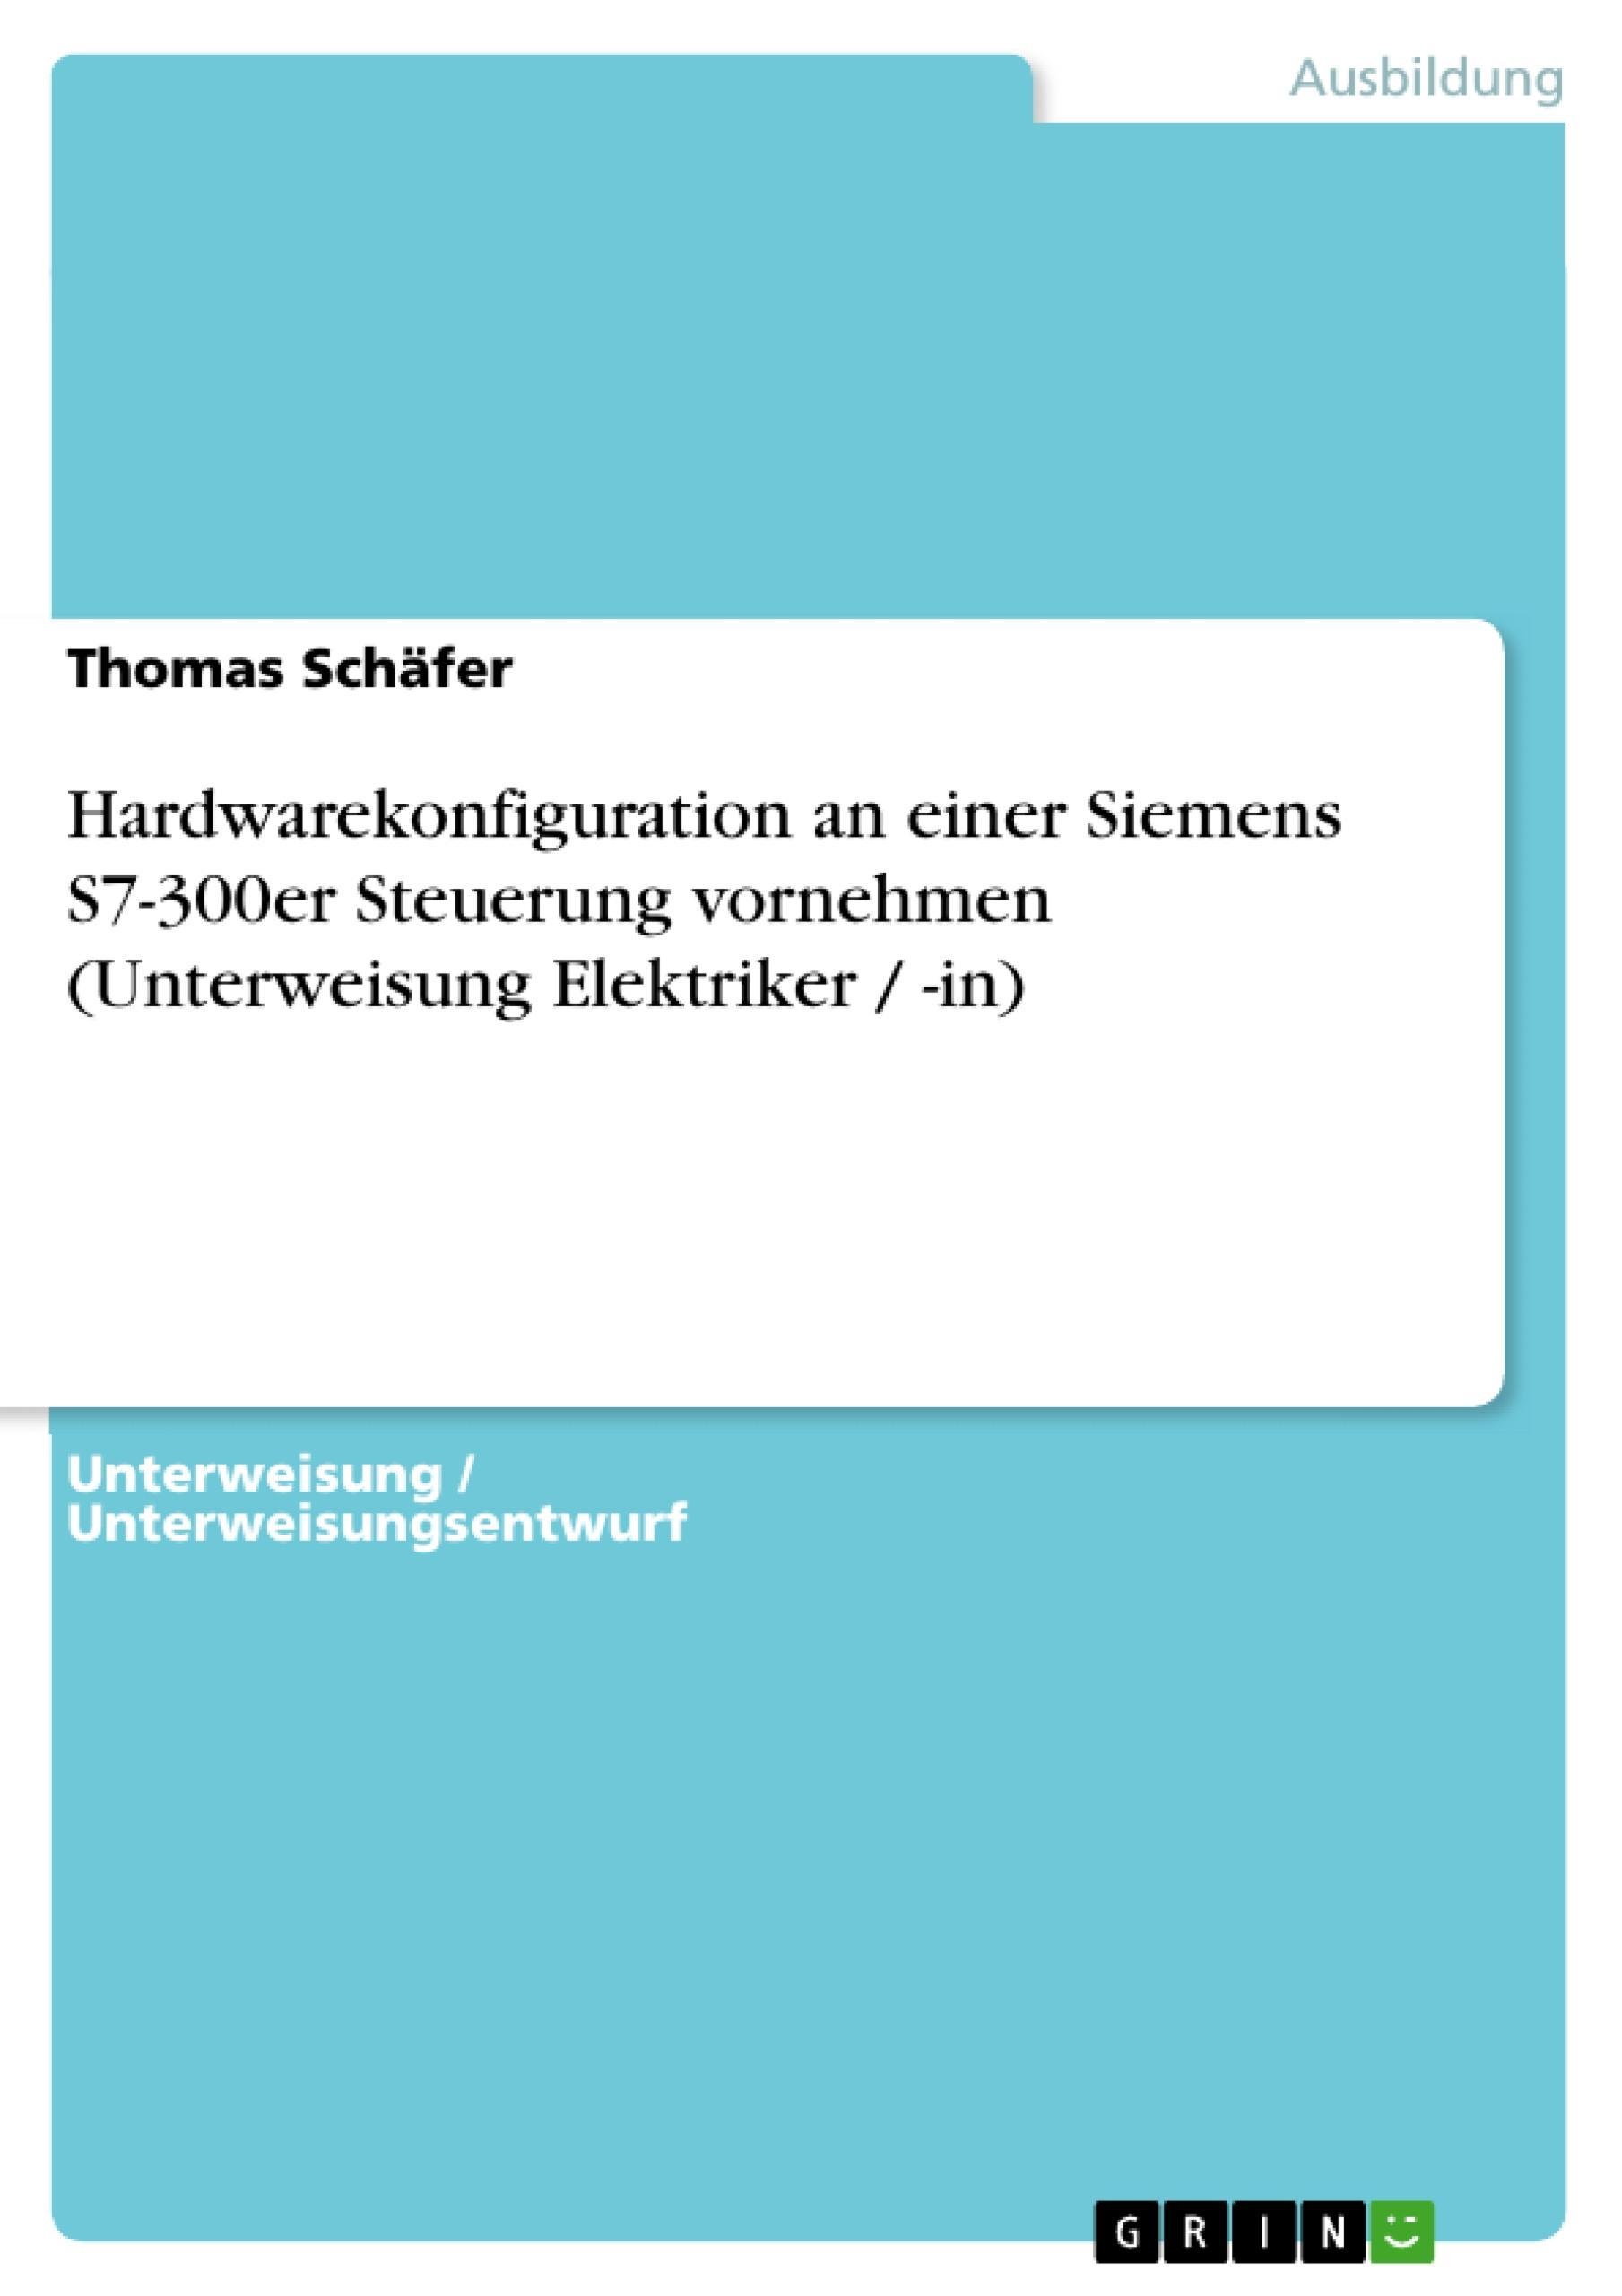 Hardwarekonfiguration An Einer Siemens S7-300Er Steuerung Vornehmen (Unterweisung Elektriker / -In) - Thomas Schäfer  Kartoniert (TB)